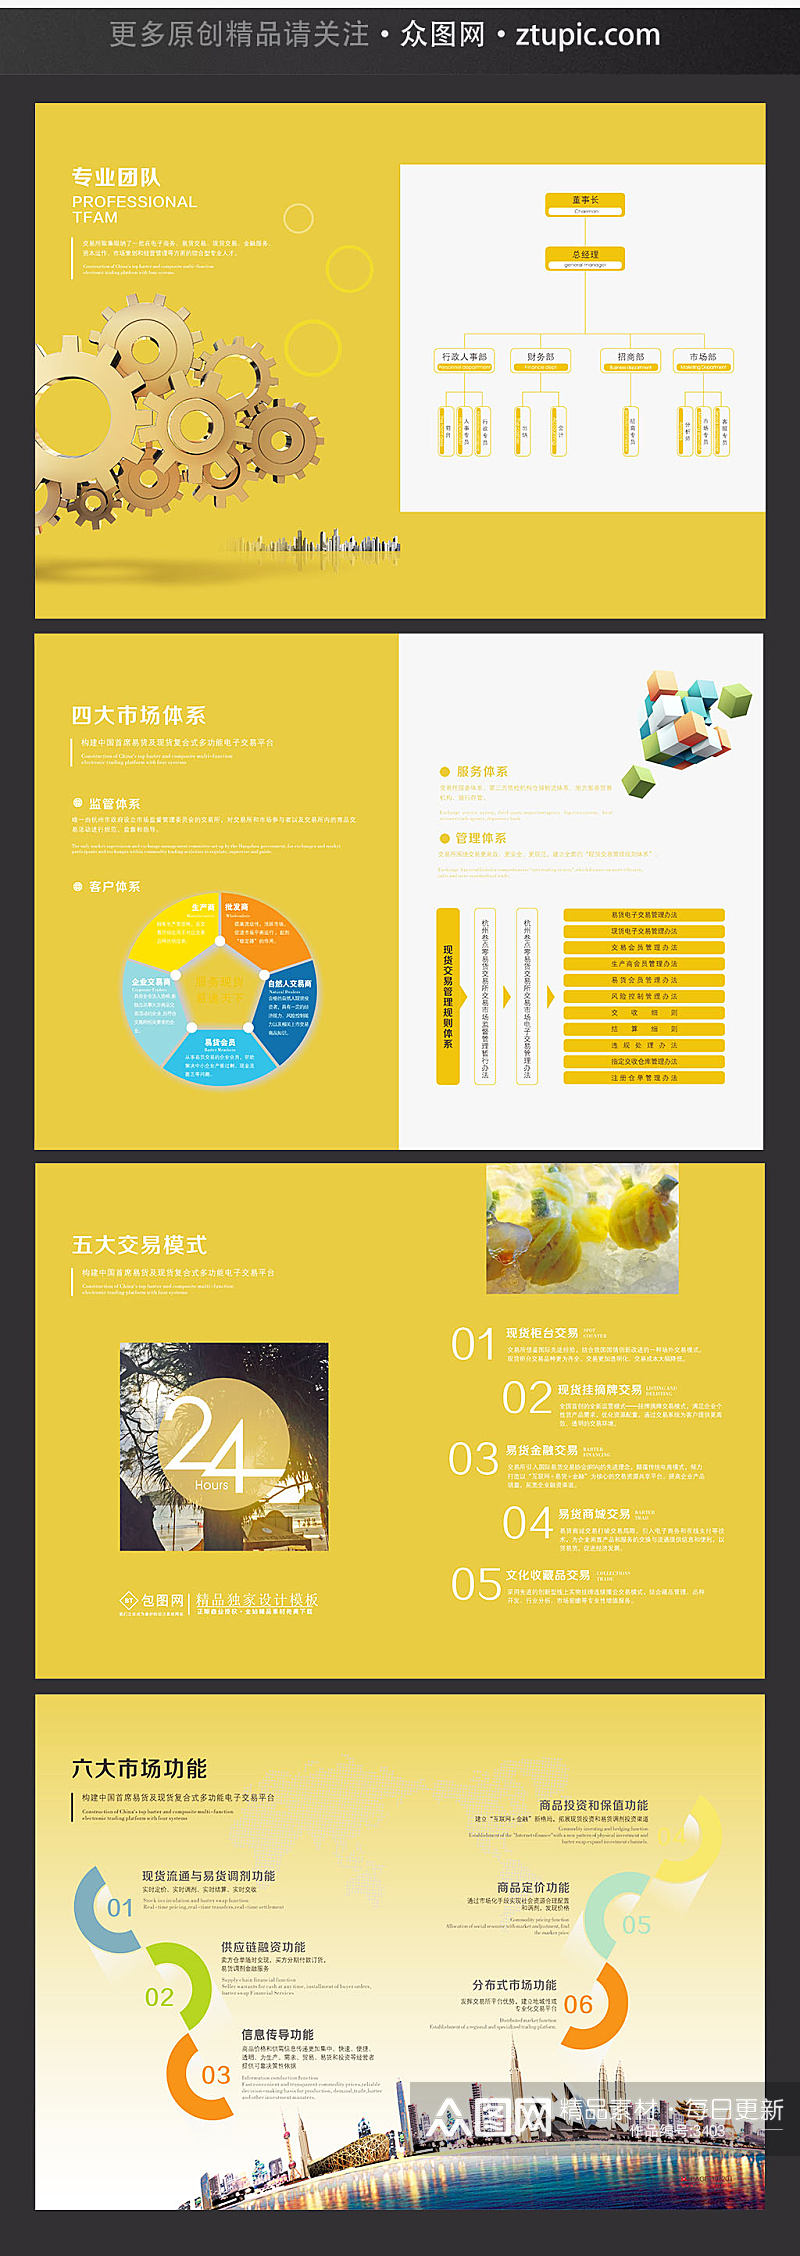 企业活动宣传简洁黄色画册设计素材